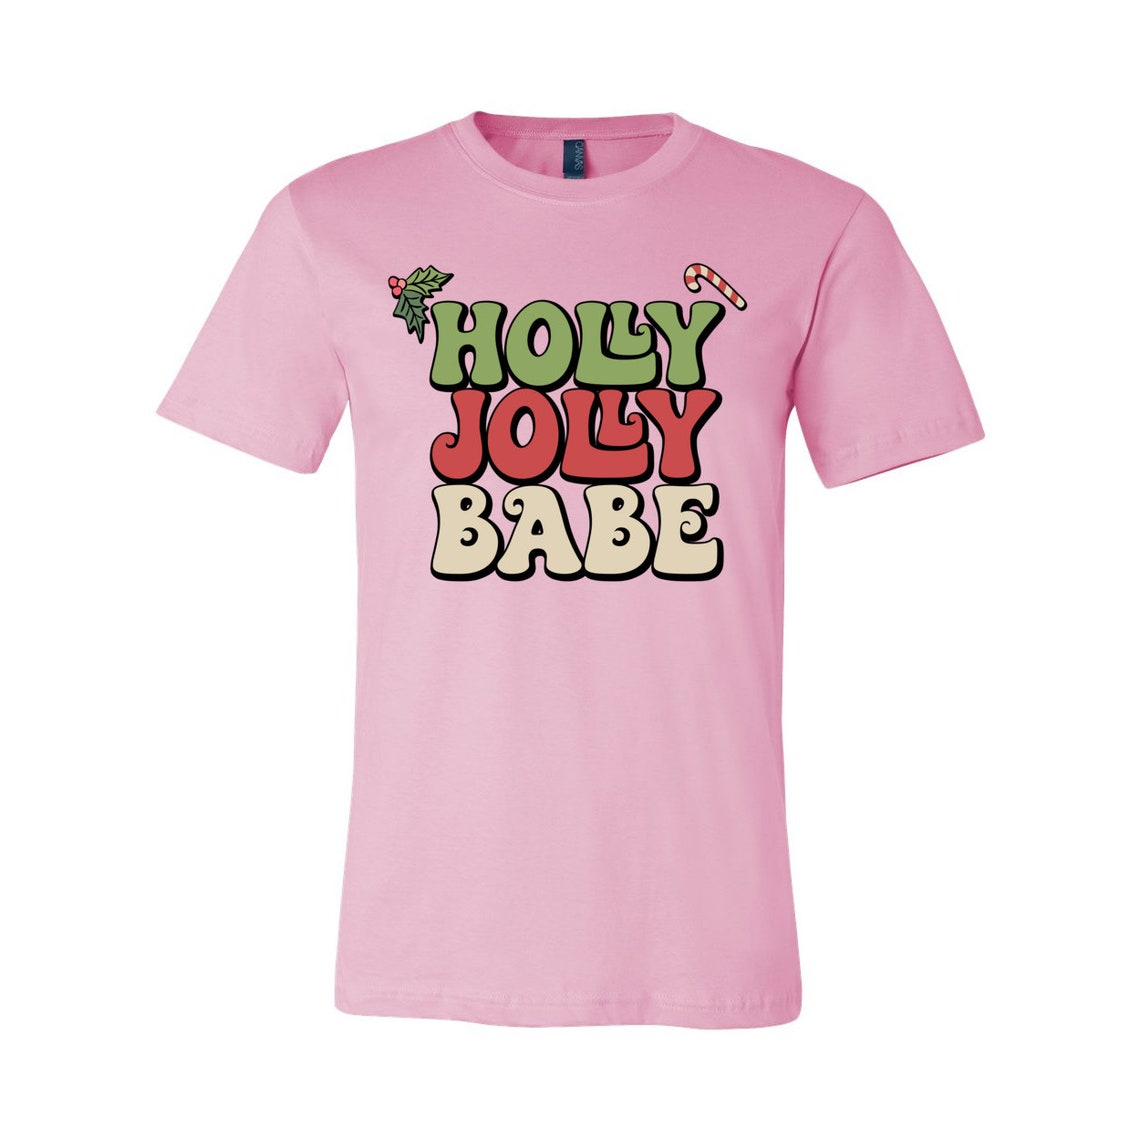 Holly Jolly Babe Shirt, Cute Christmas Shirt, Christmas Shirt, Xmas Tshirt, Santa Vibes, Iprintasty Christmas, Holiday Apparel